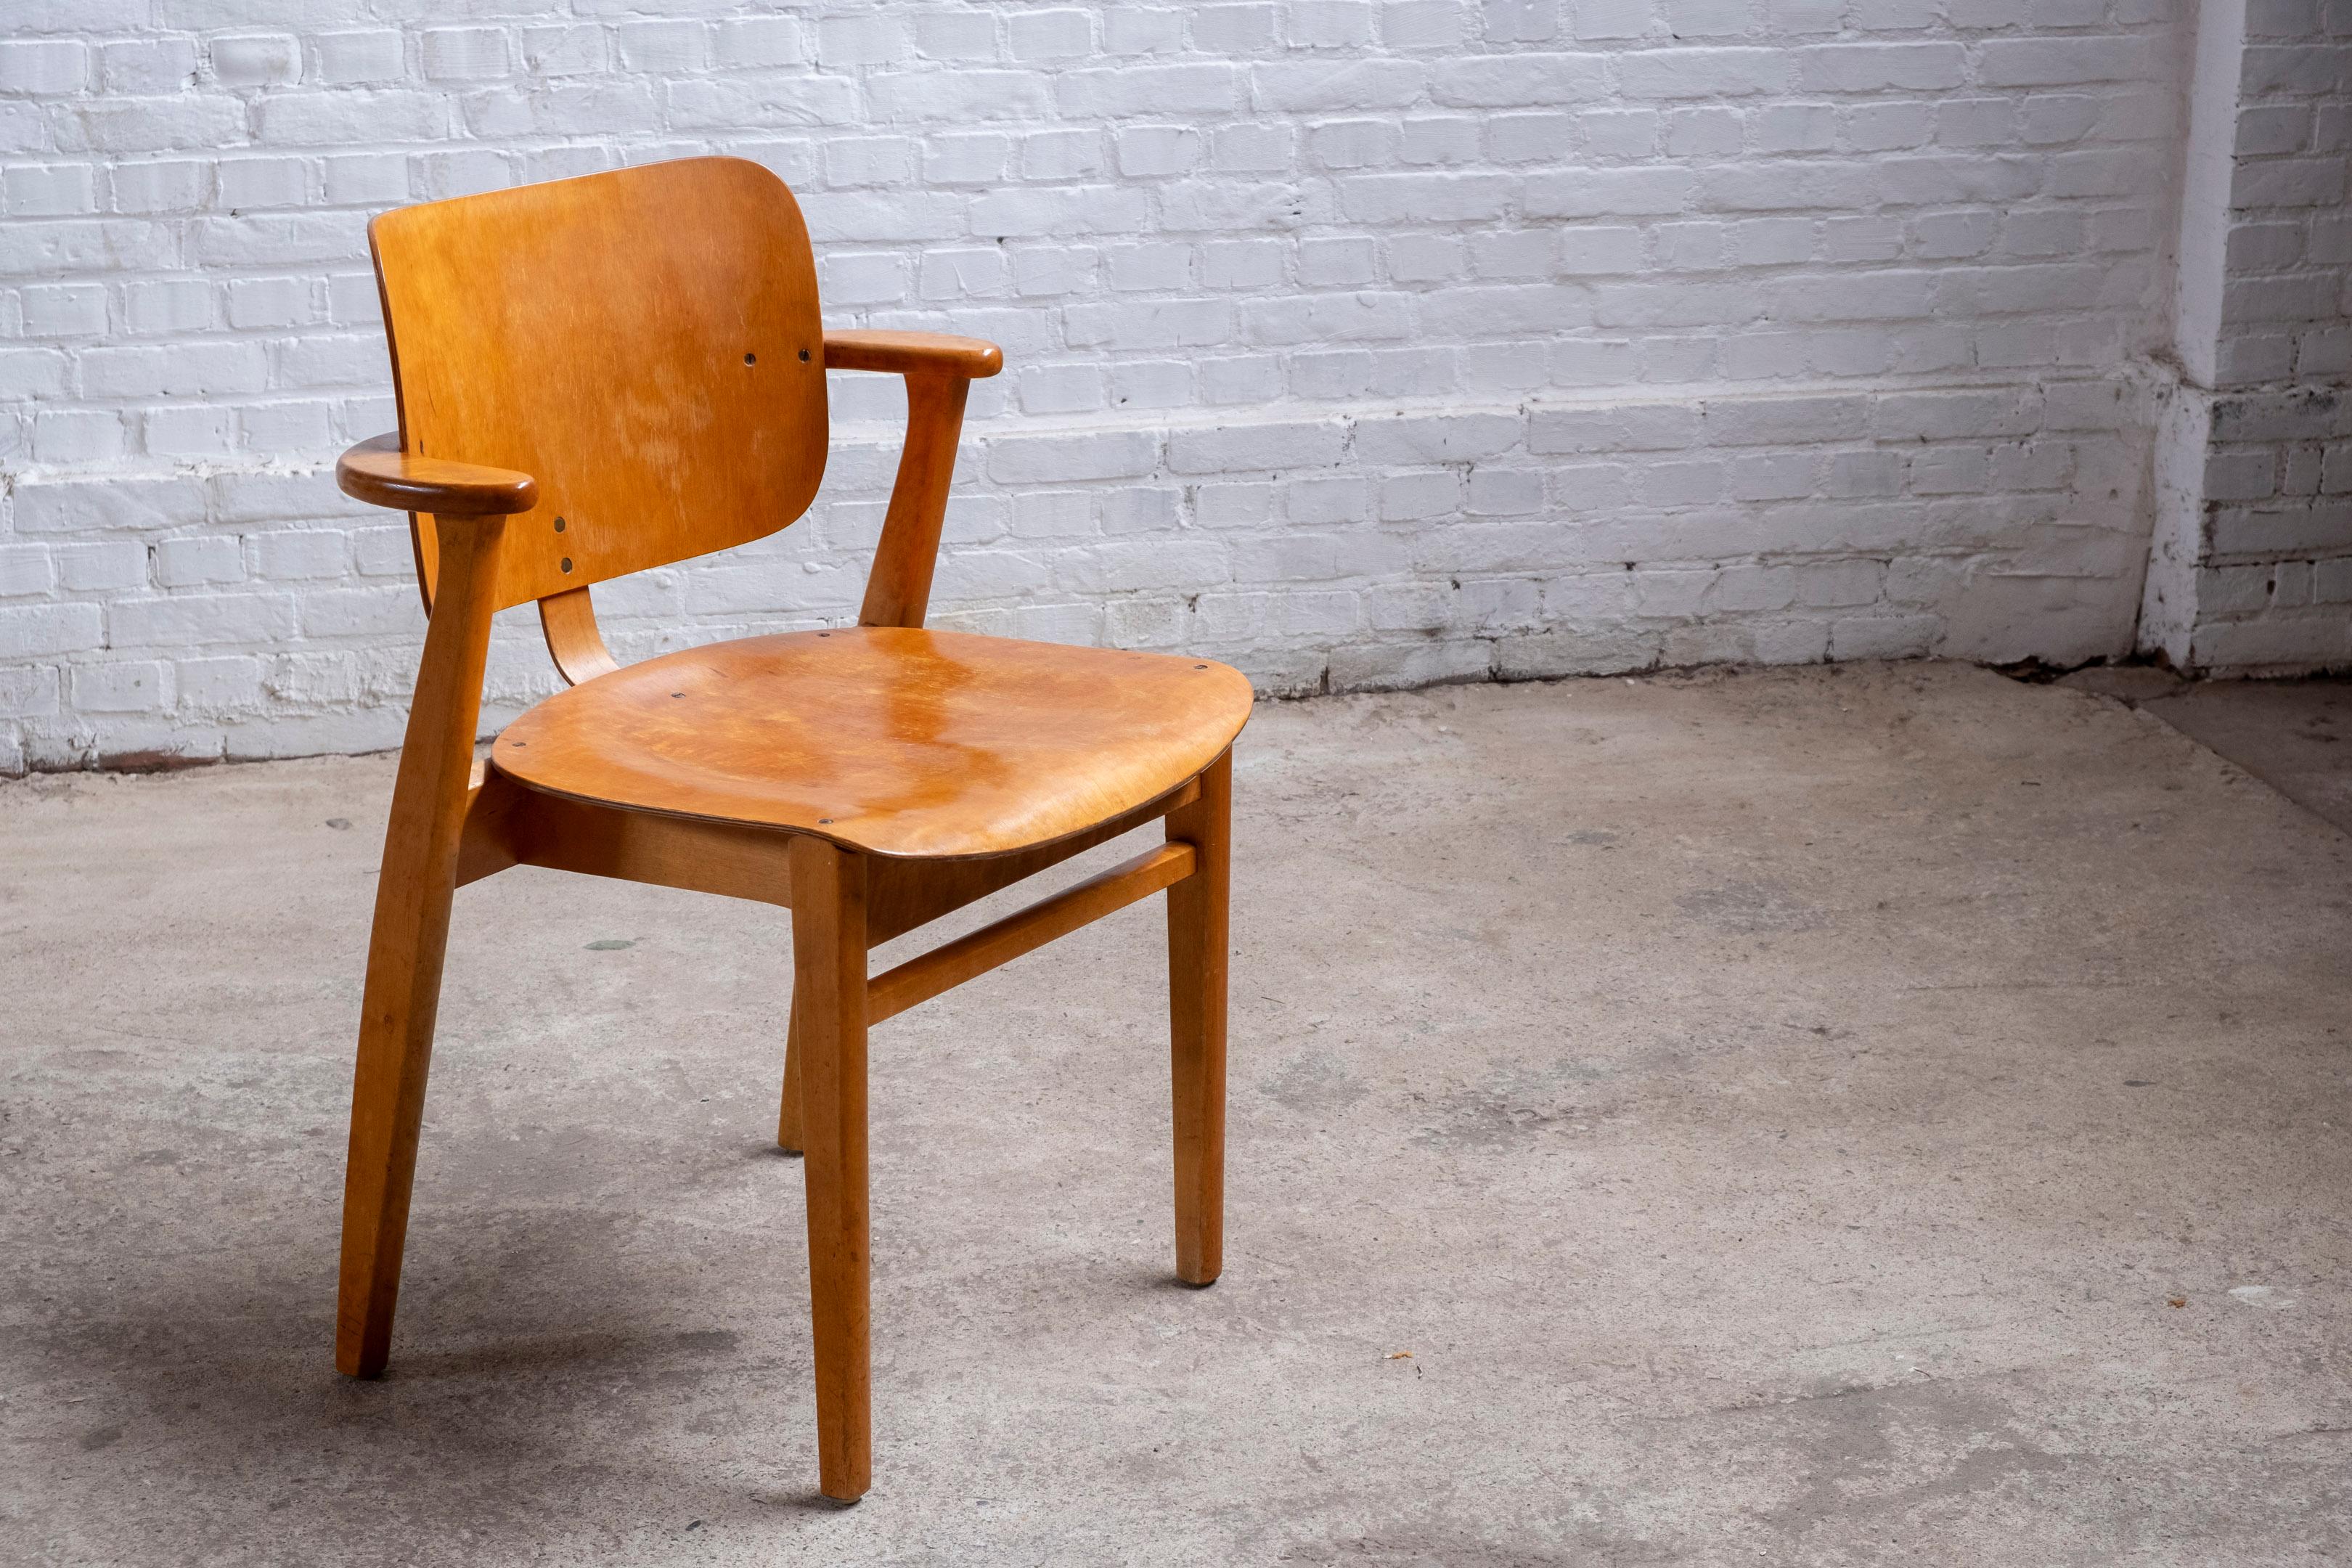 Frühe Version des Domus-Stuhls von Ilmari Tapiovaara, hergestellt von Keravan Puuteollisuus in den 1950er Jahren. Der Domus Chair wurde ursprünglich 1946 als Teil einer Möbelserie für den Studentenwohnkomplex Domus Academica in Helsinki